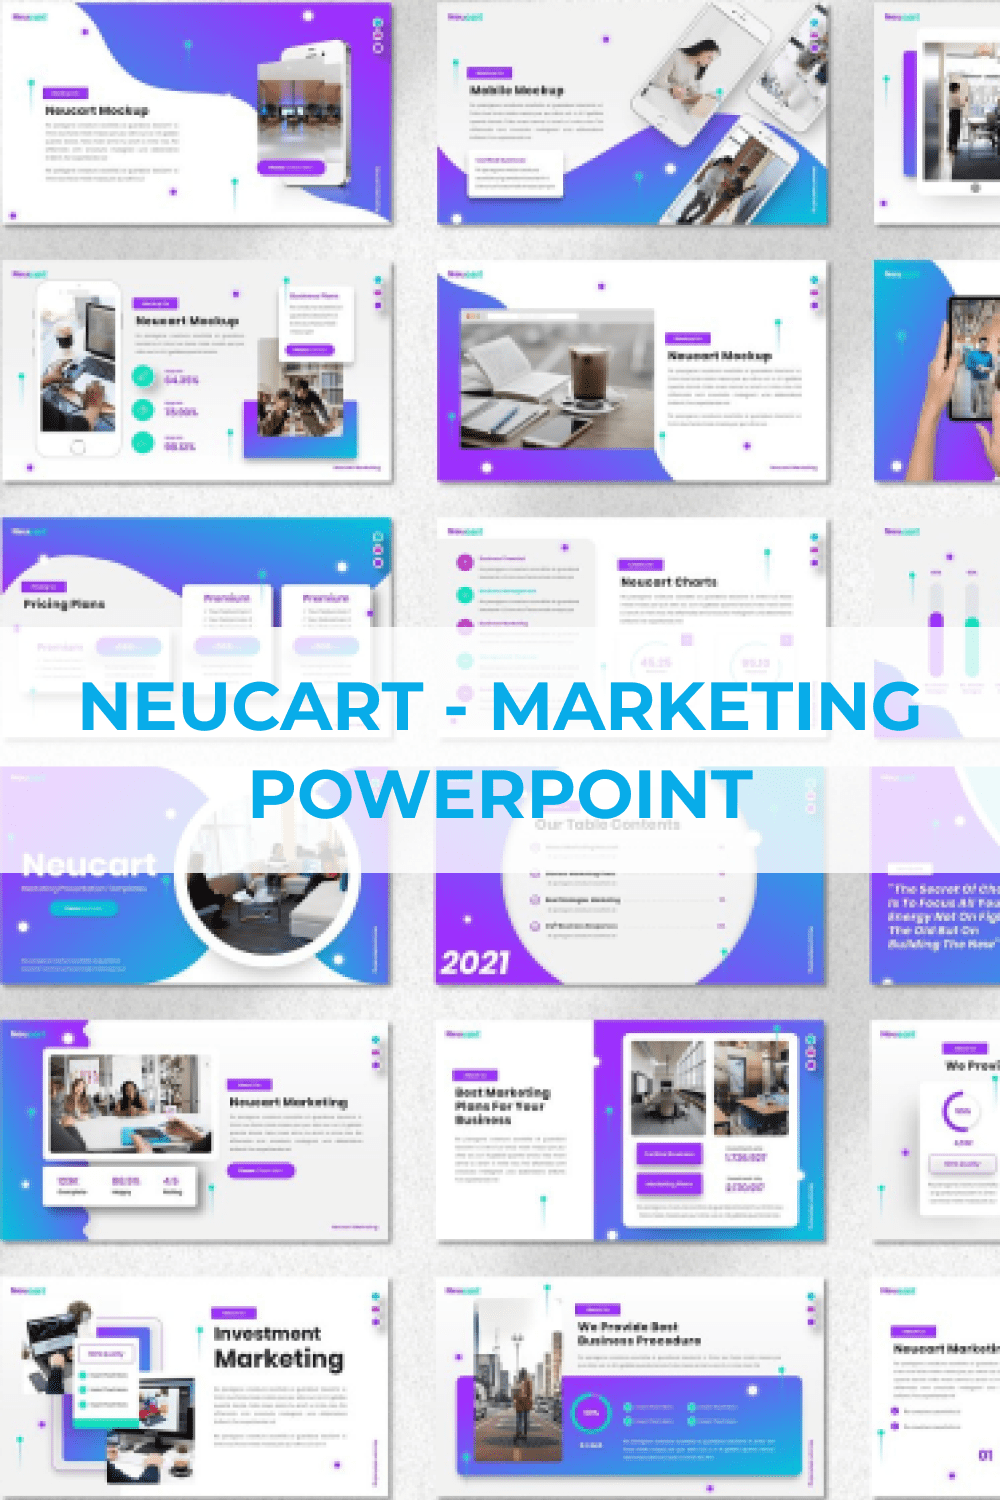 Neucart - Marketing Powerpoint Pinterest.